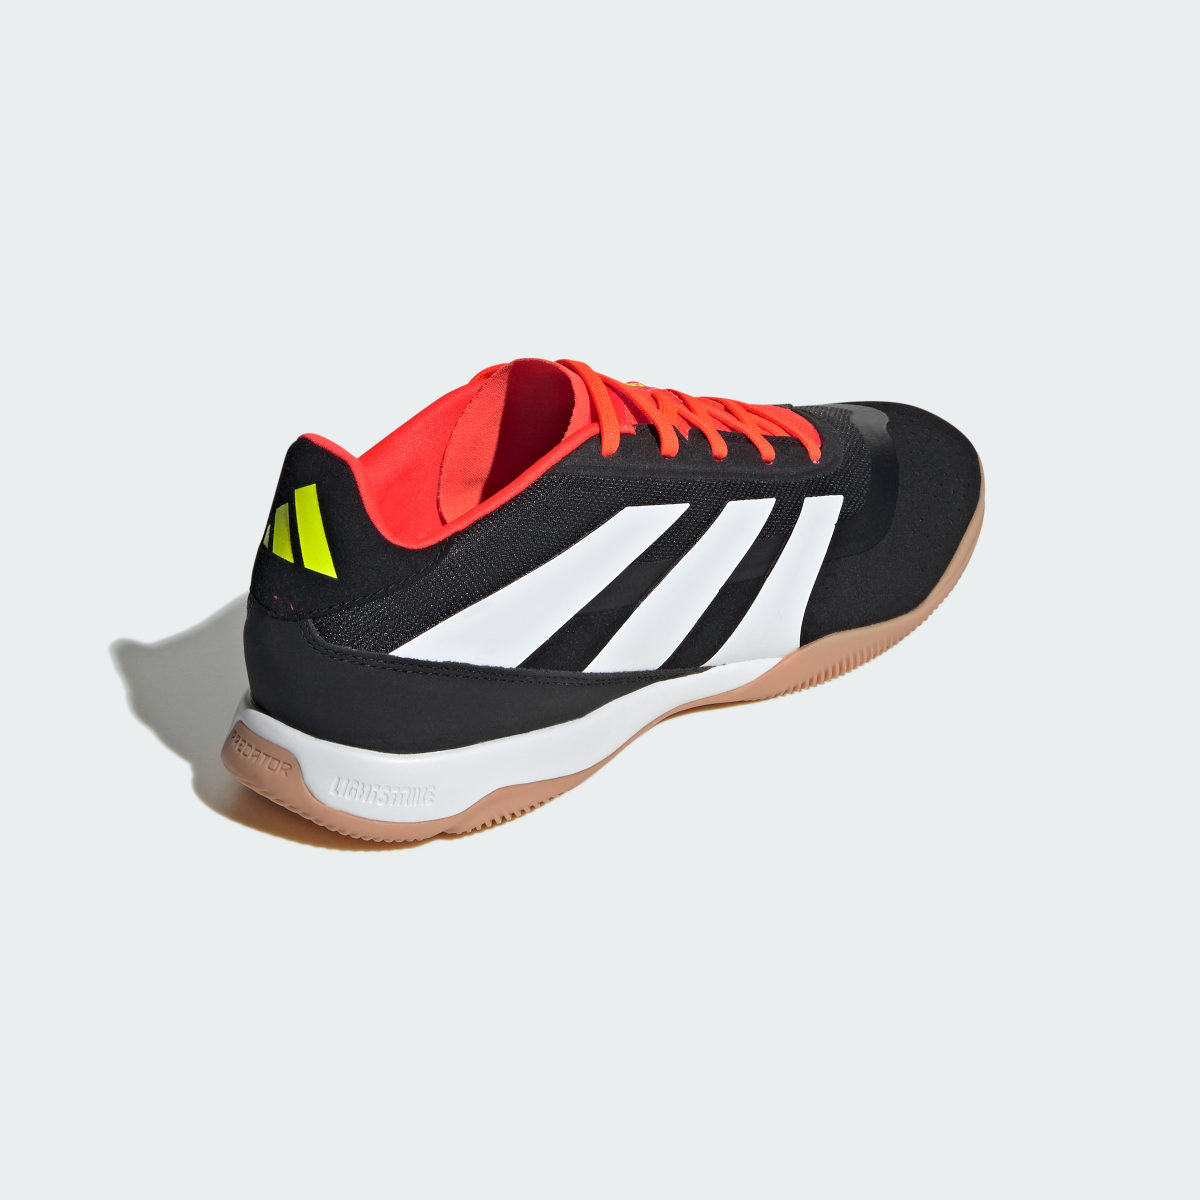 Adidas Predator League Indoor Football Boots. 6